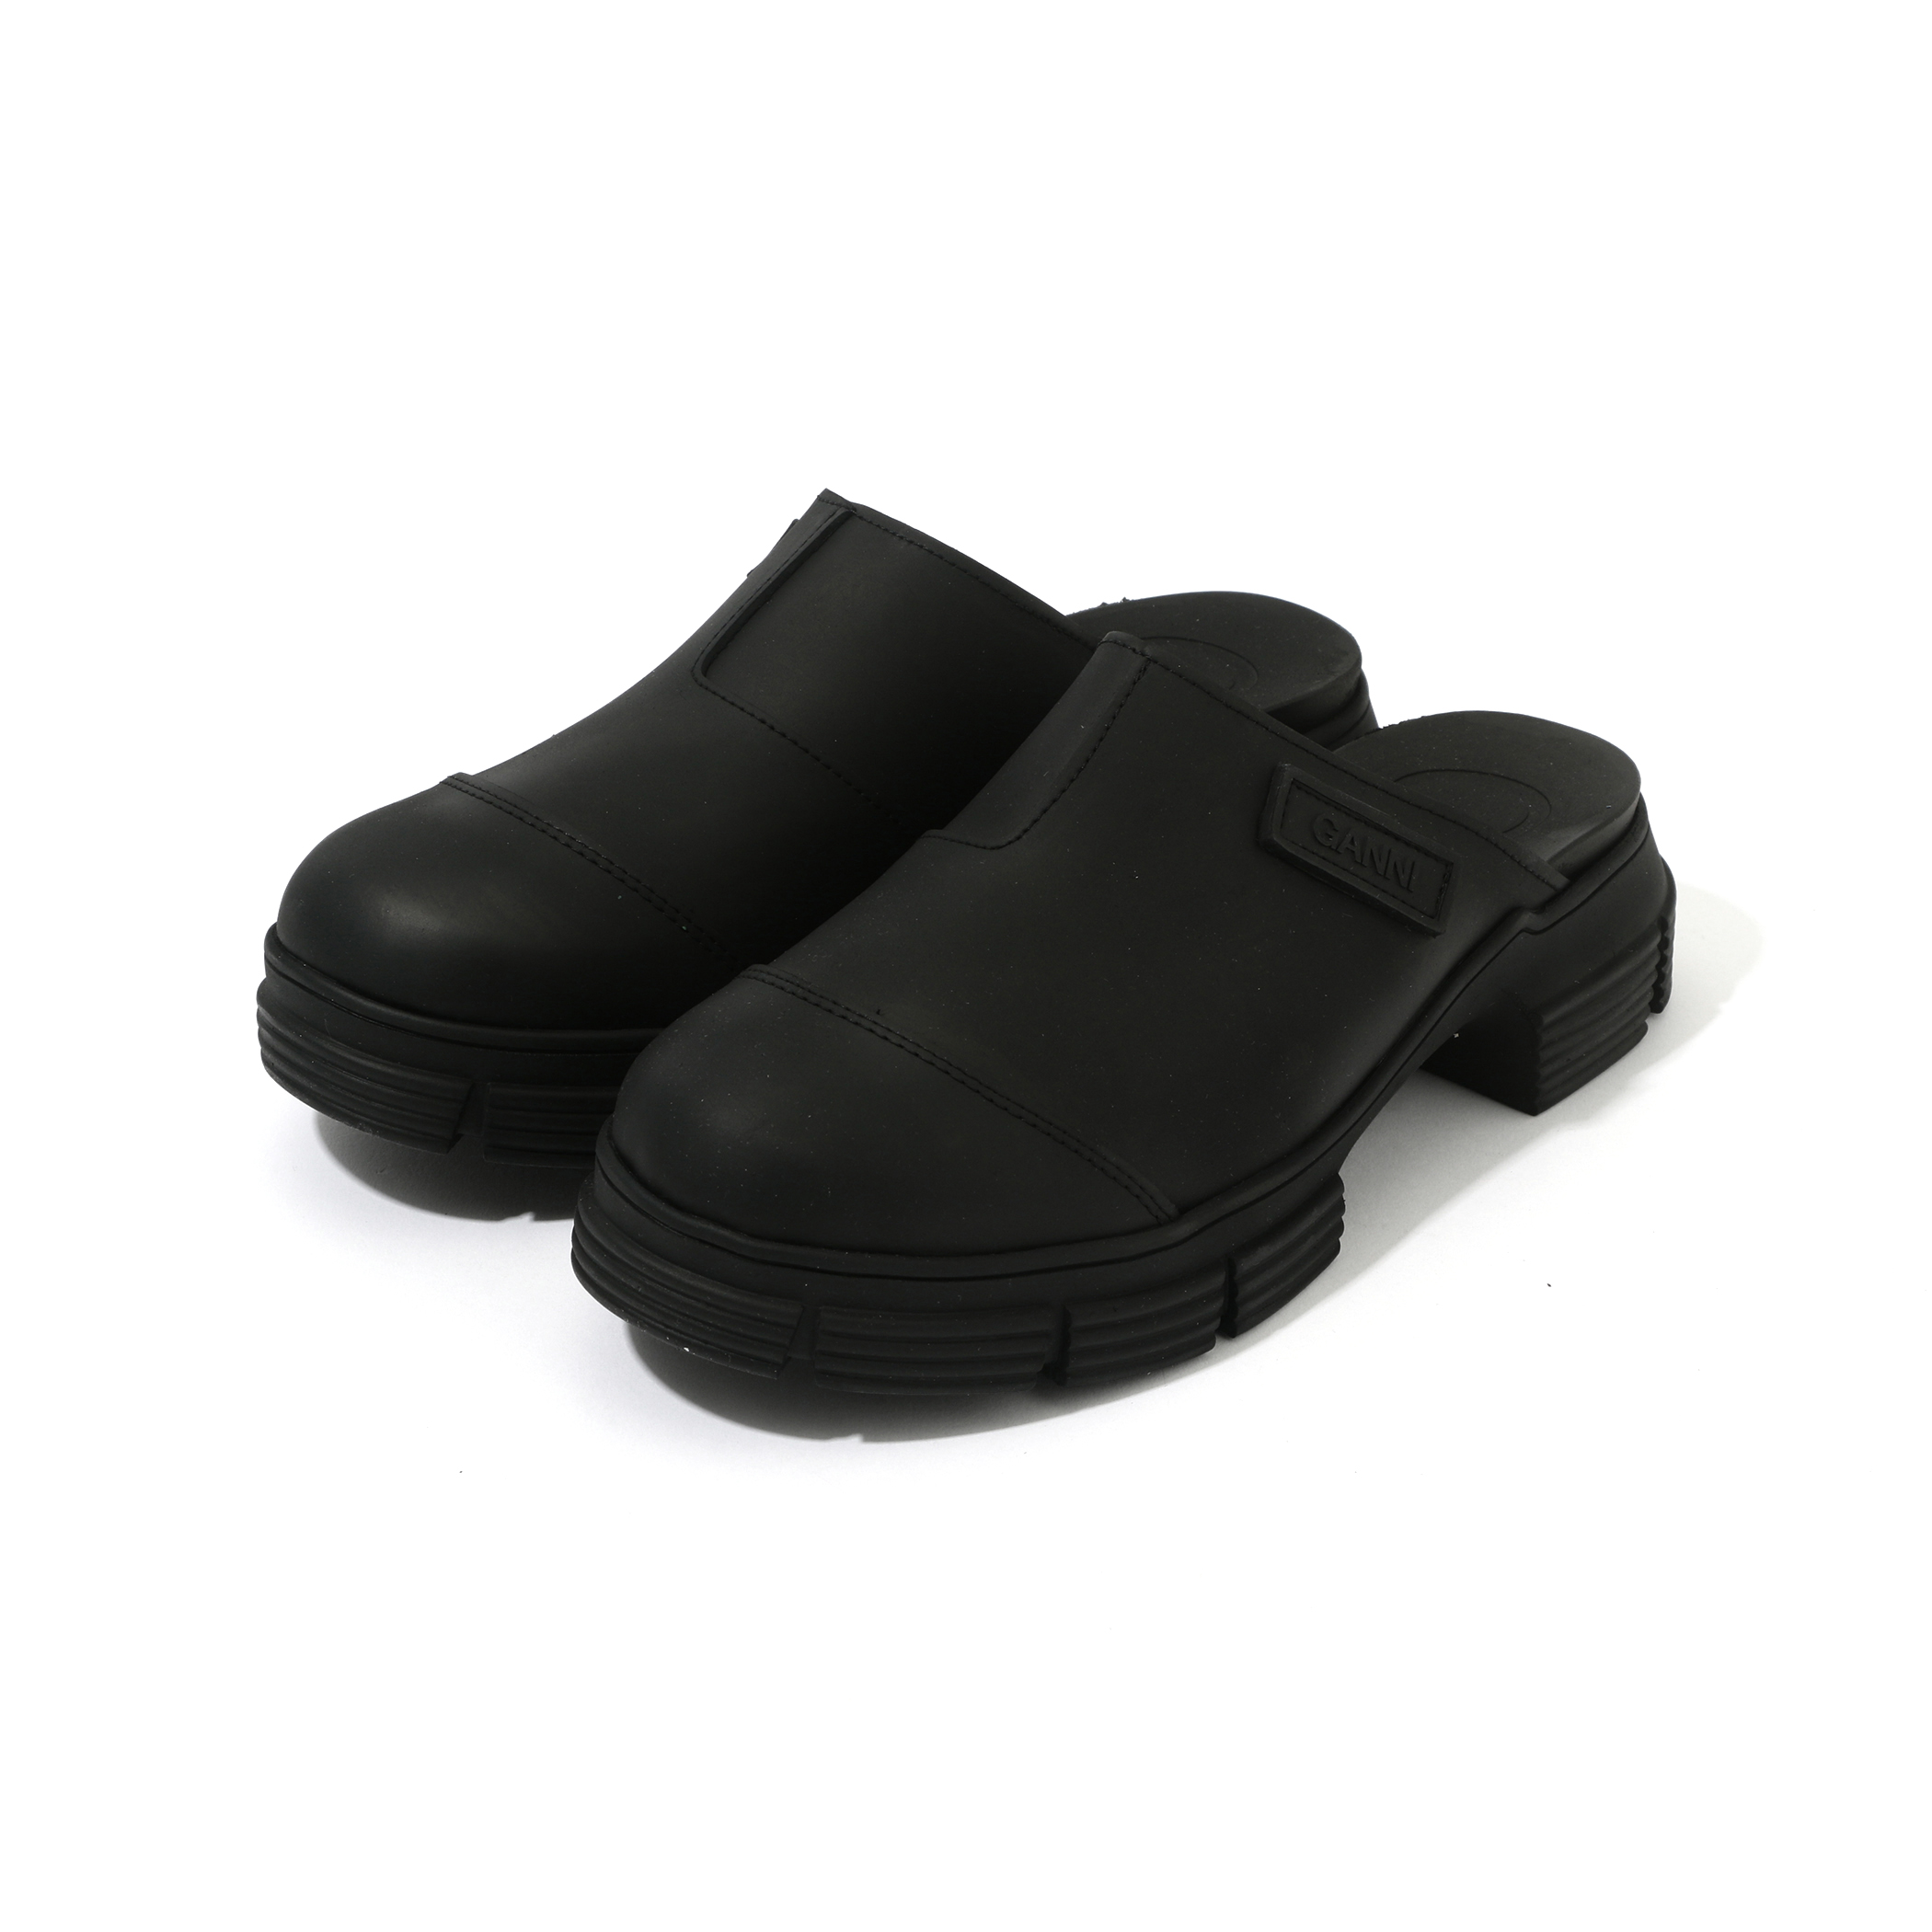 GANNI boots | トゥモローランド 公式通販